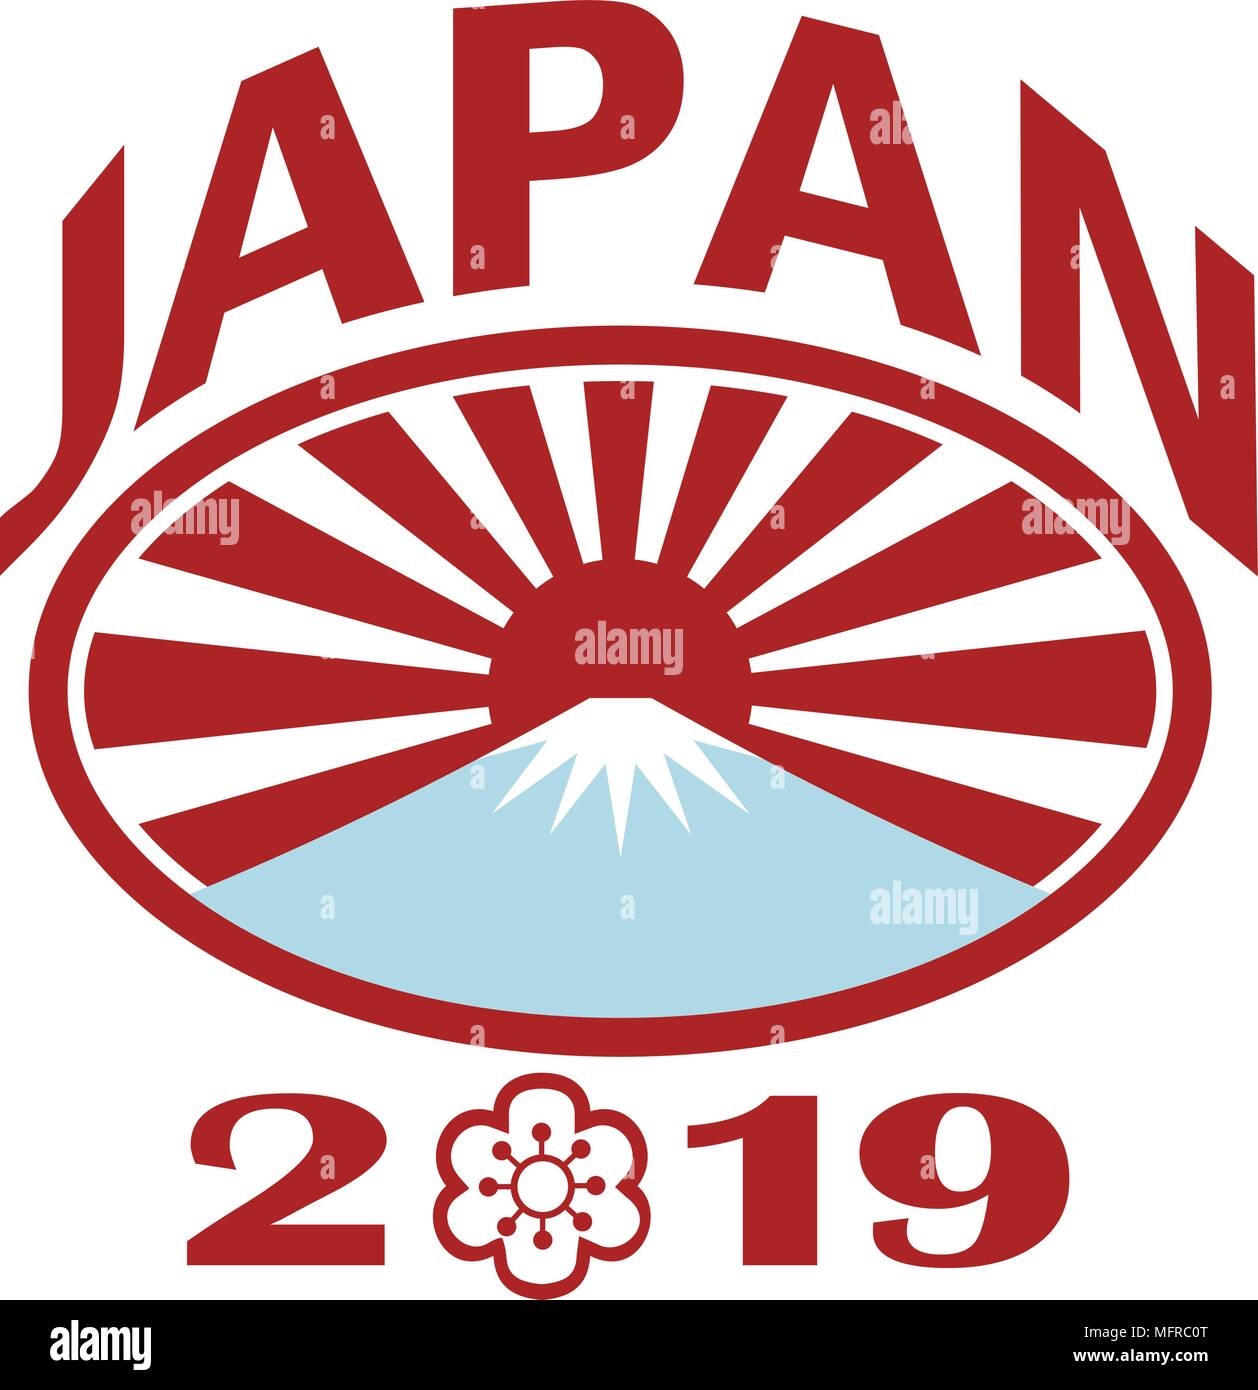 Estilo retro ilustración de un balón de rugby con el sol naciente japonés y el Monte Fuji montaña dentro de óvalo con palabras Japón 2019 y sakura o el cerezo bloss Ilustración del Vector